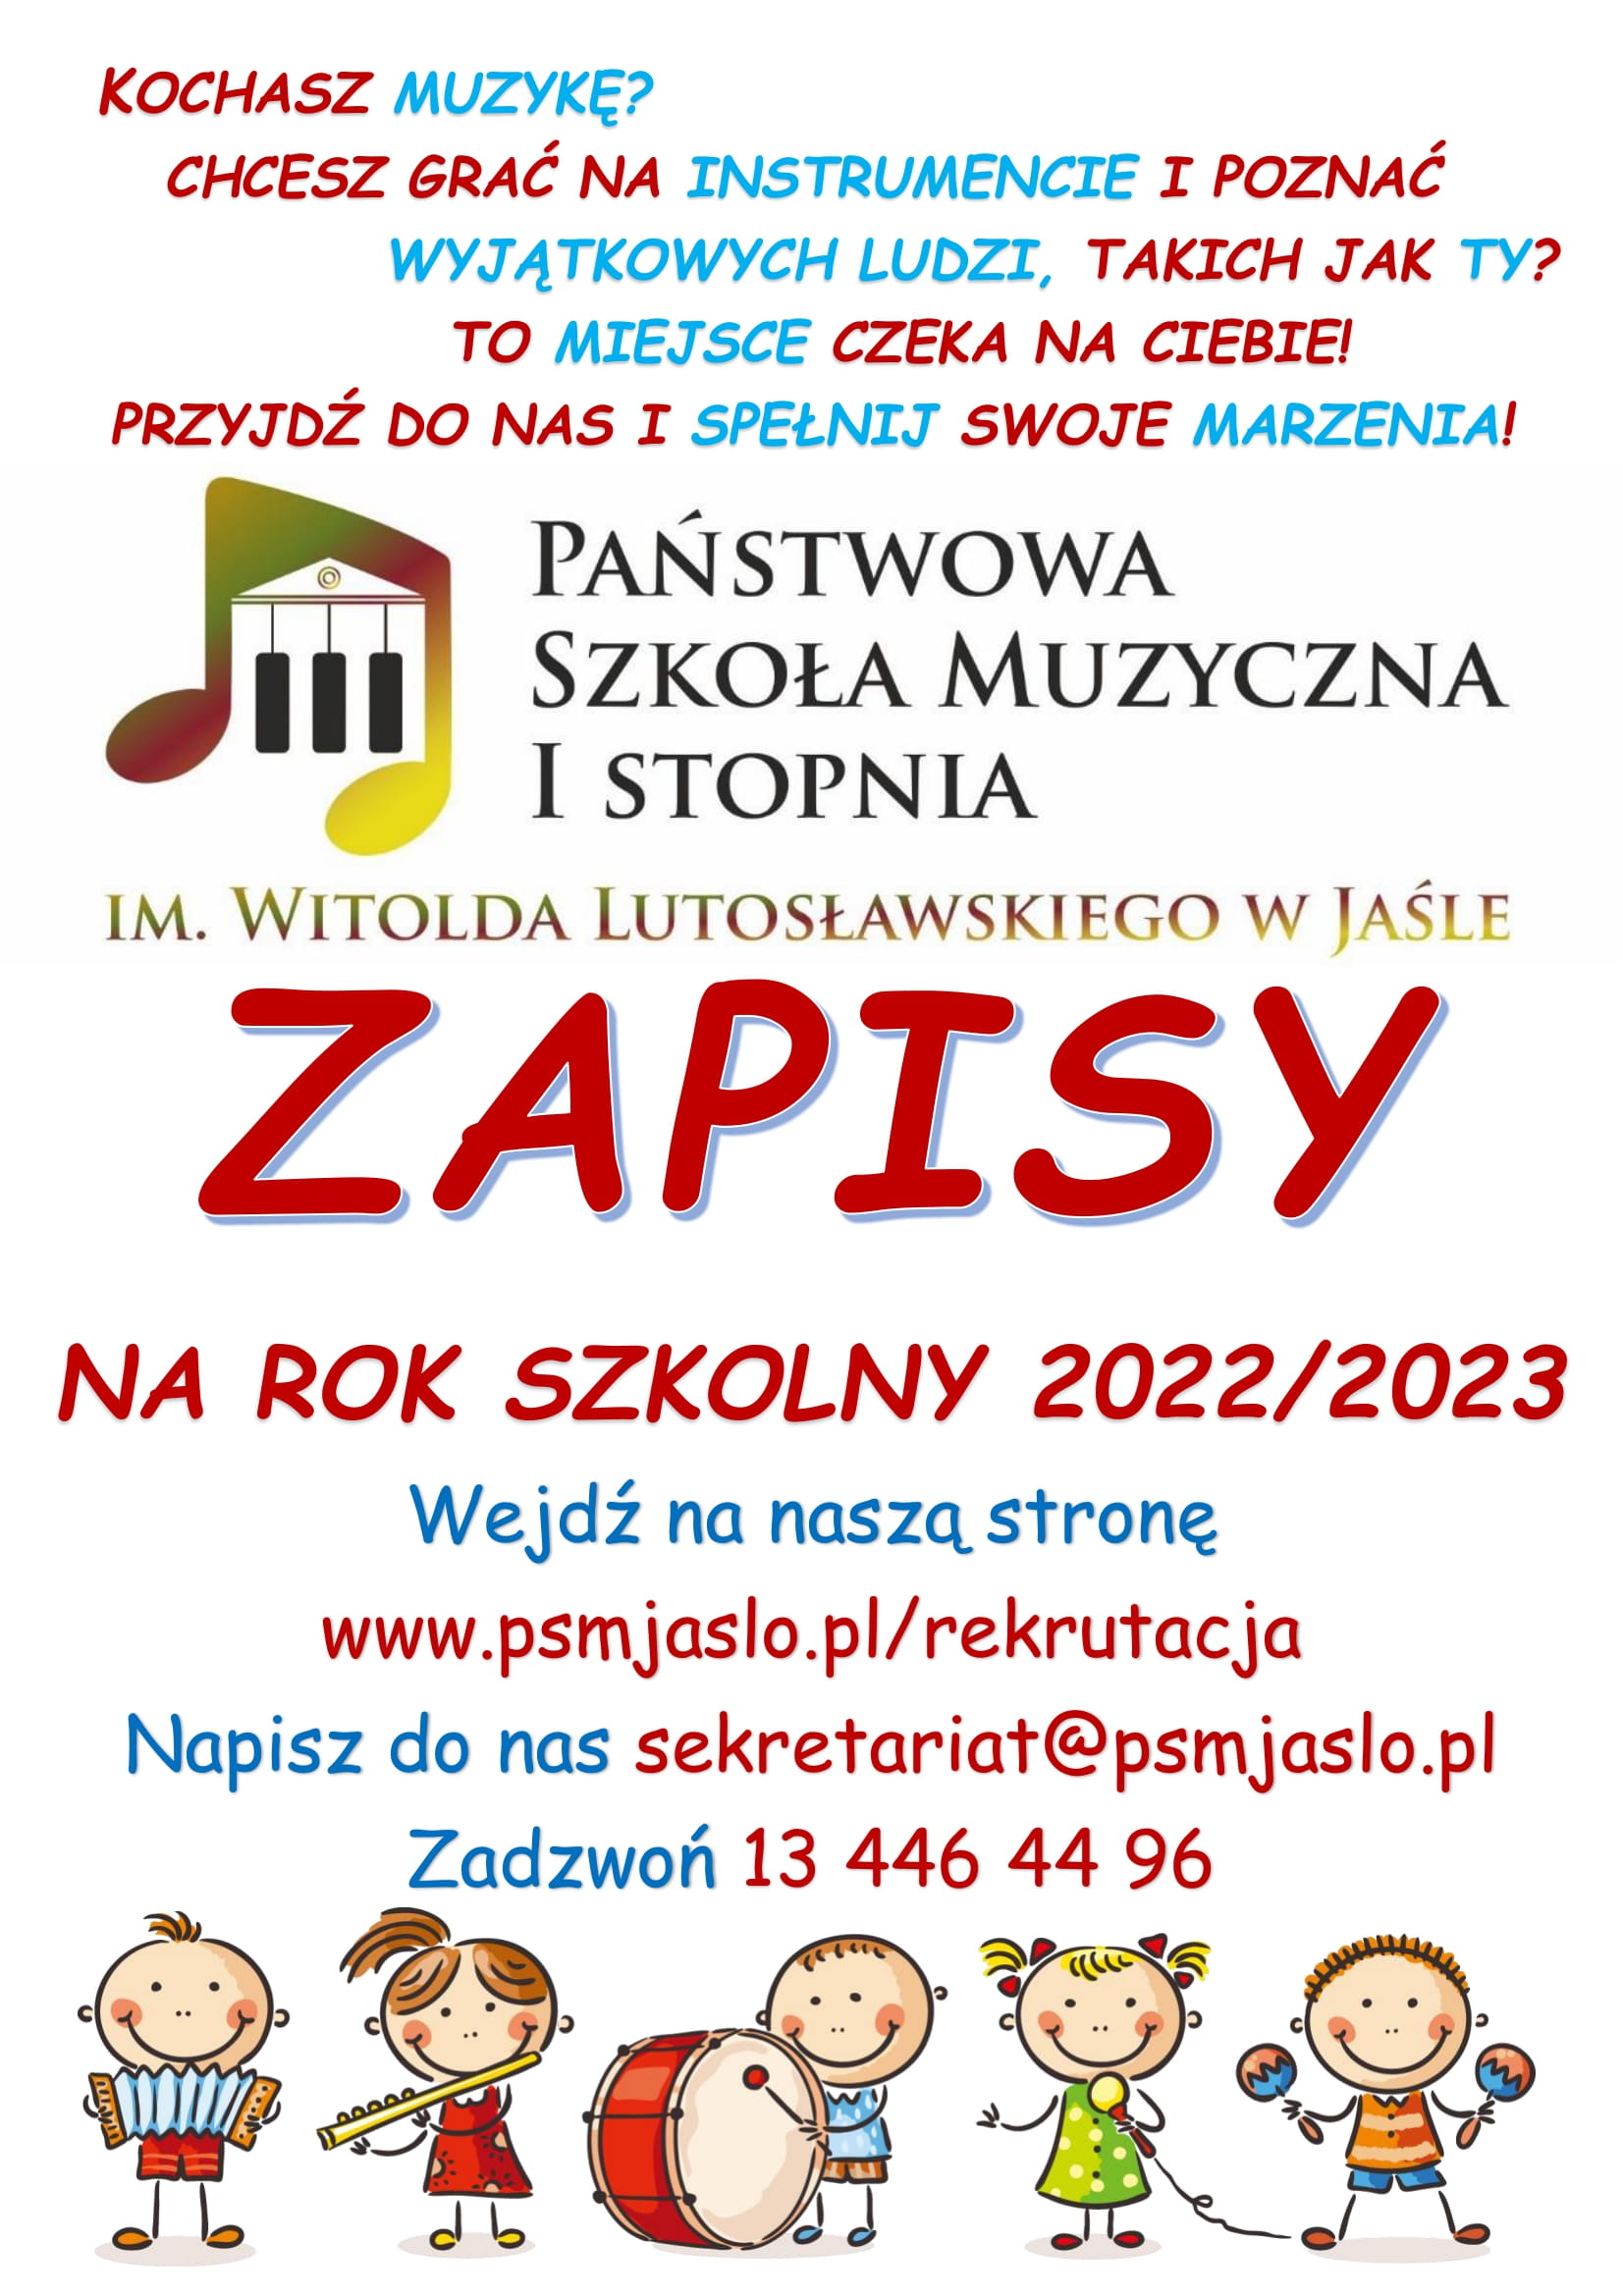 plakat rekrutacja 2022 1 2